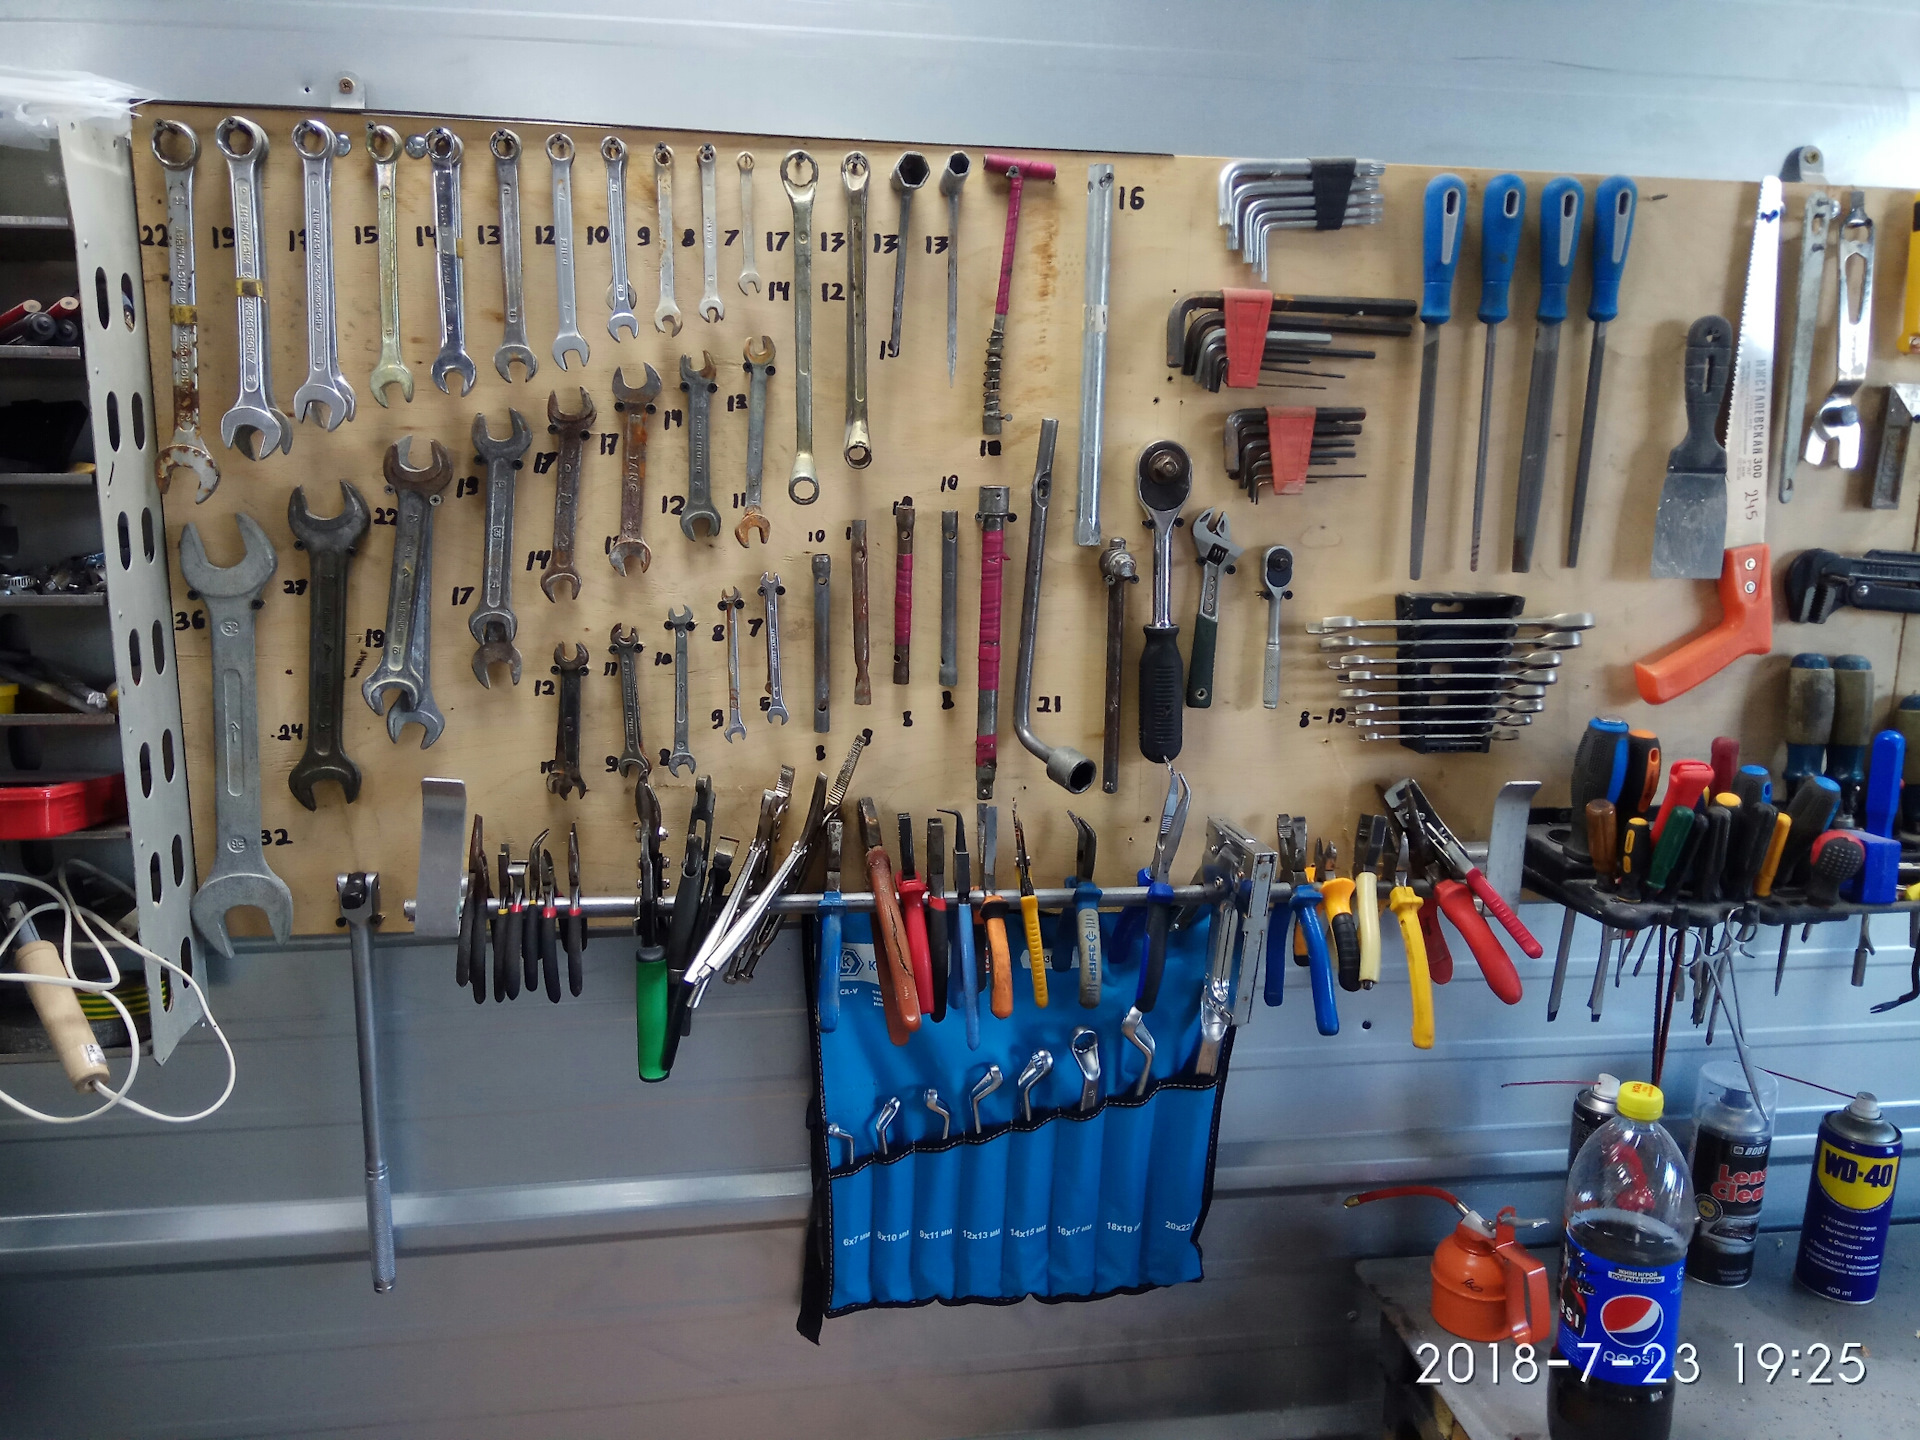 Самодельные приспособления для гаража и хранения инструмента в гараже (чертёж)